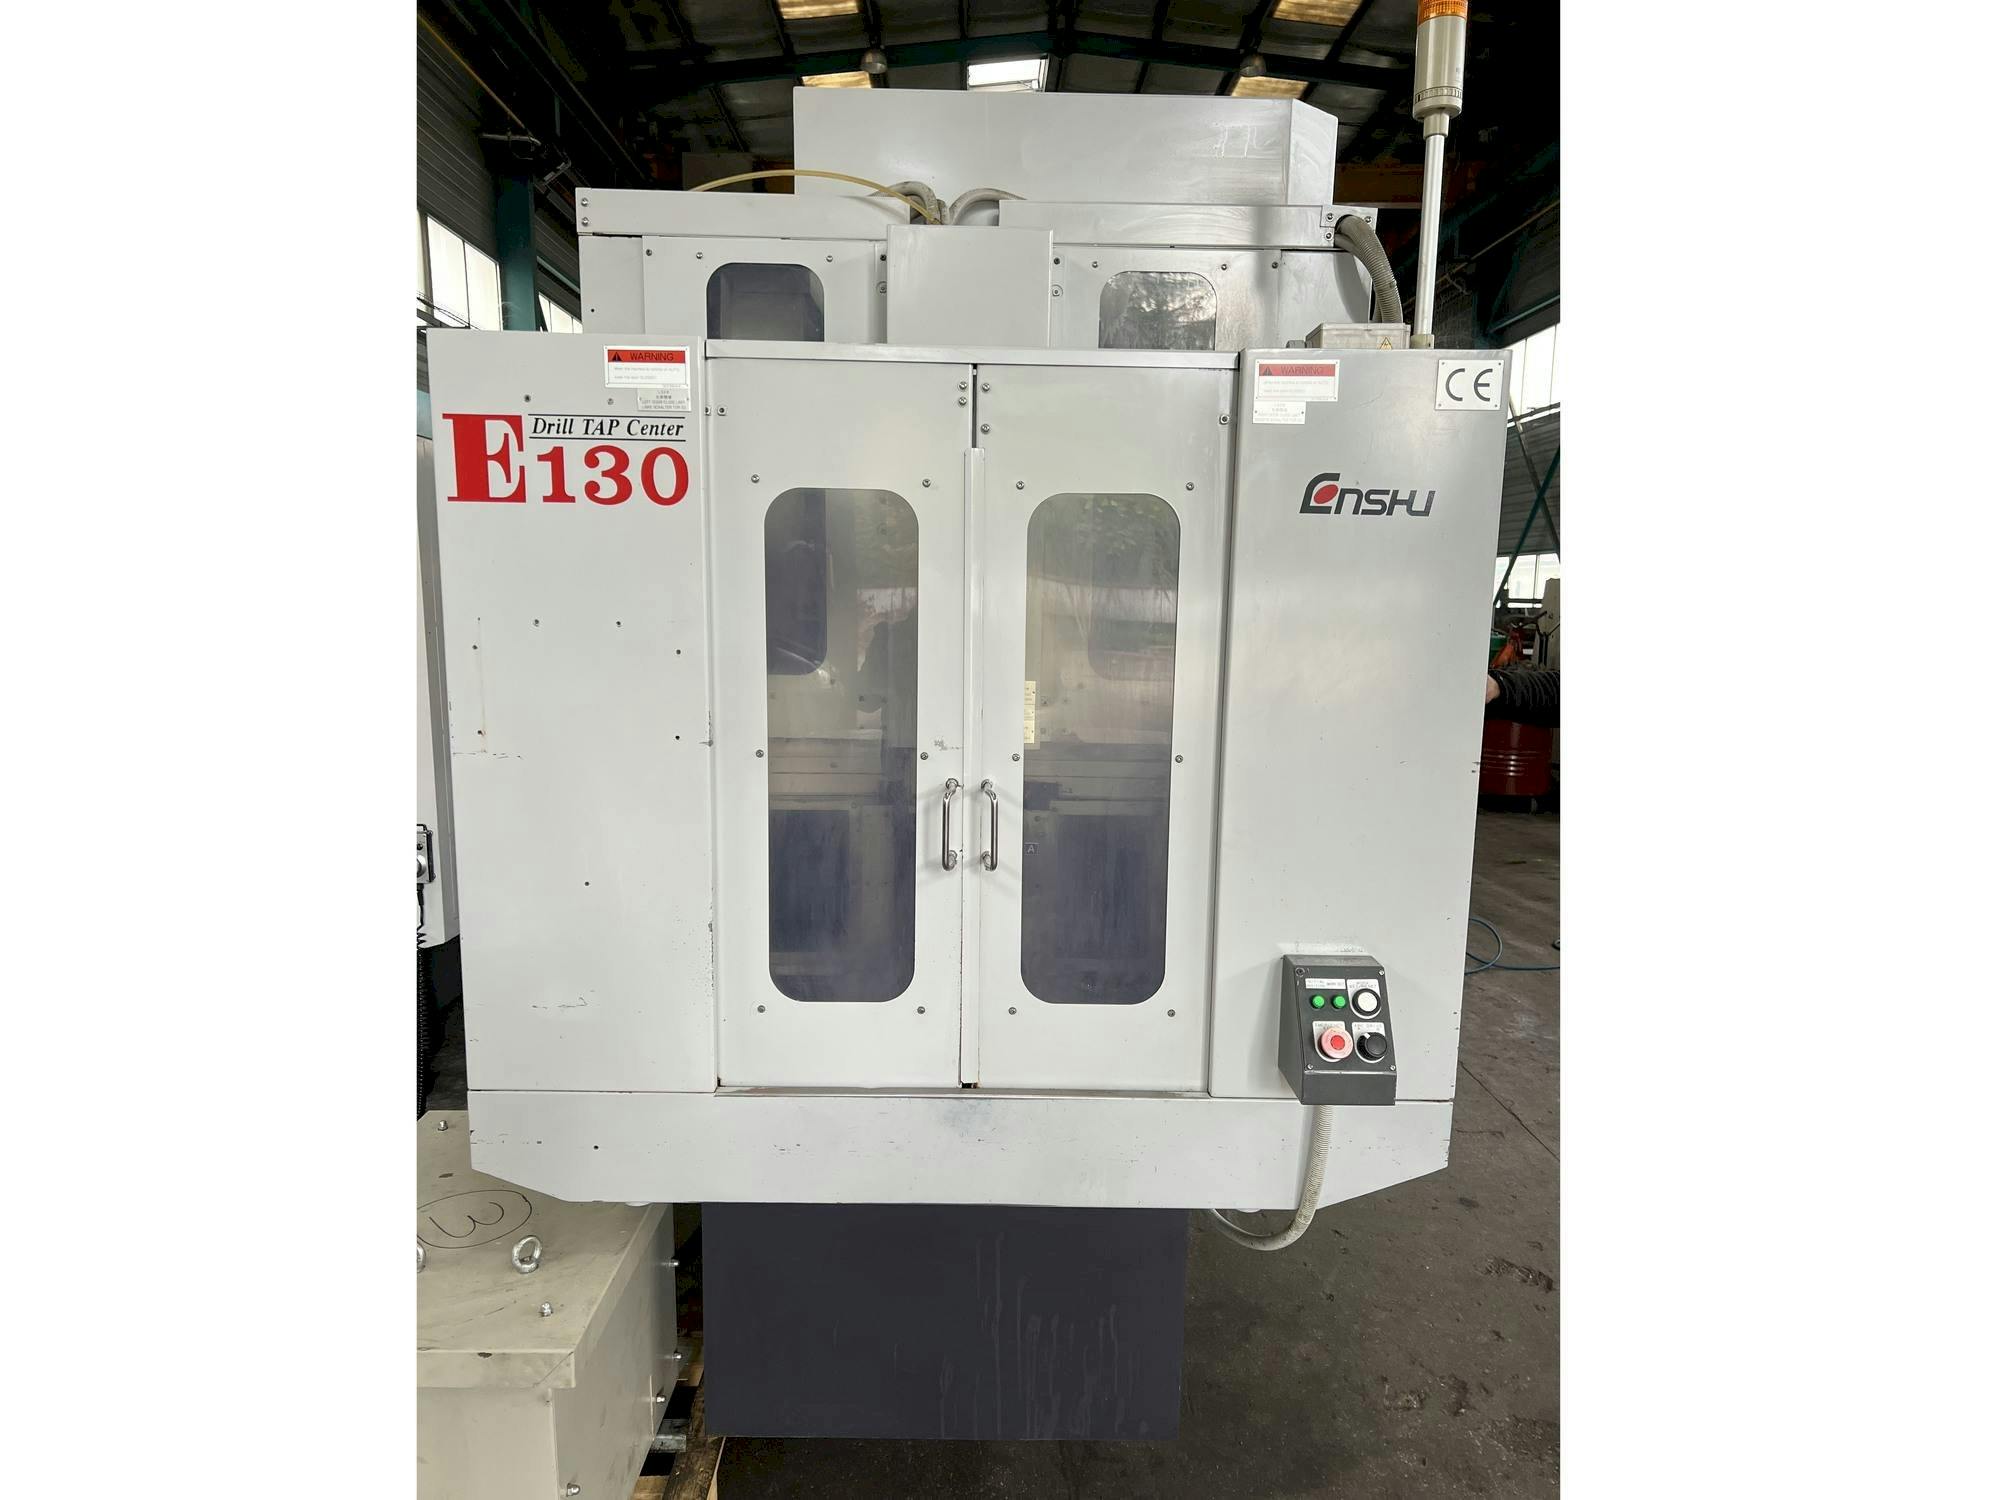 Vooraanzicht  van Enshu E130  machine